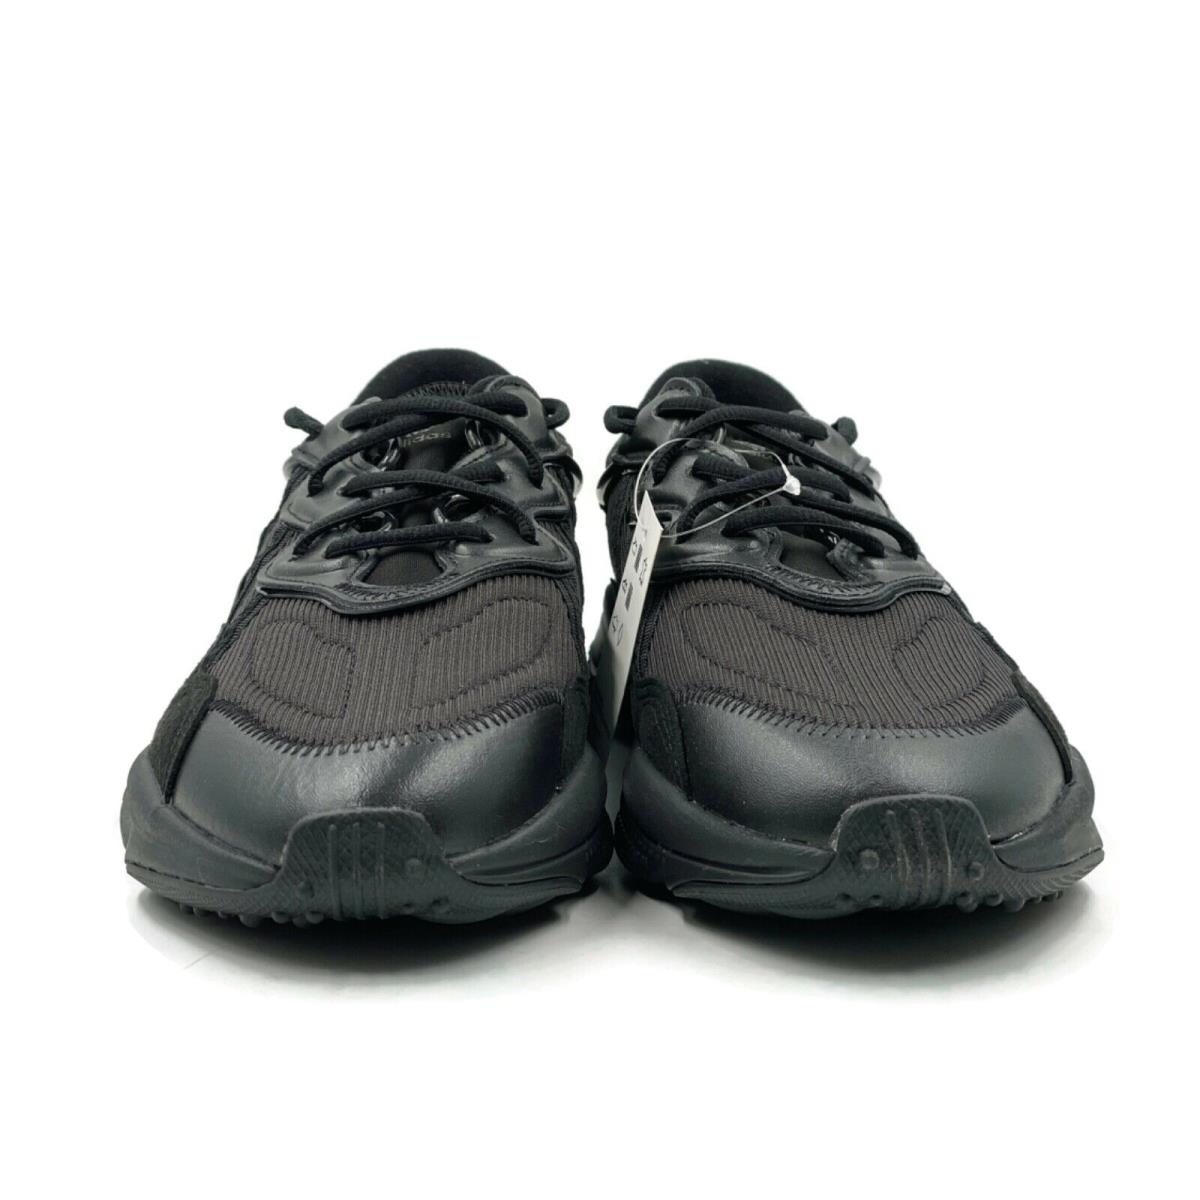 Adidas shoes Ozweego - Black 7